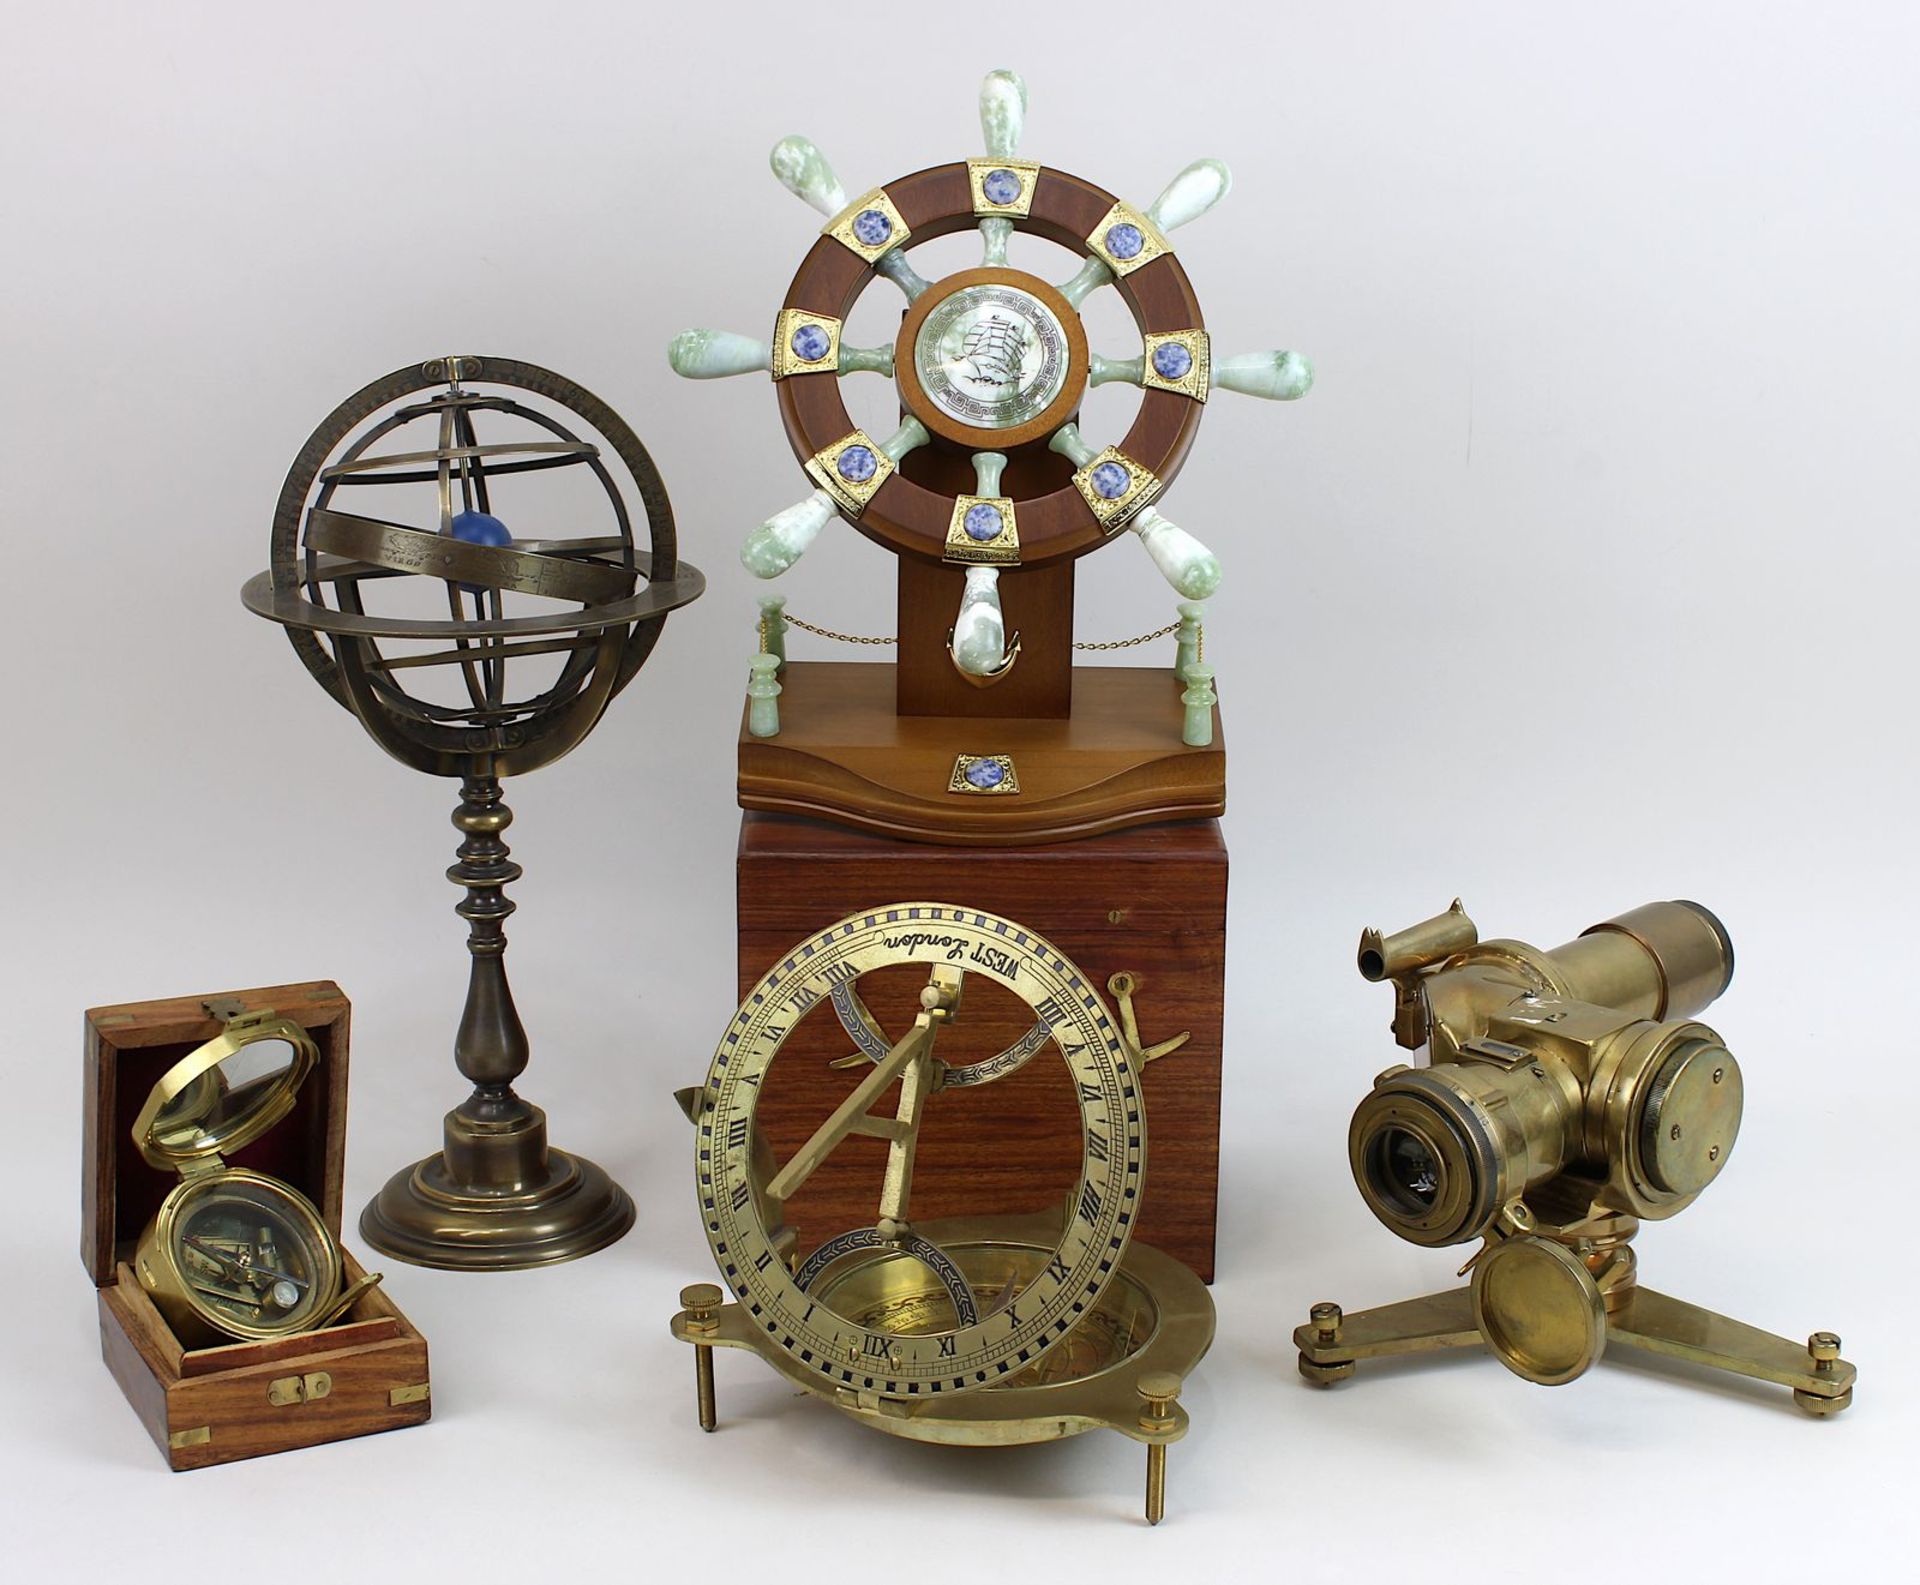 5 nautische Instrumente, neuzeitlich, ein Tischkompass mit Sonnenuhr, bez. "West London", Messing, D